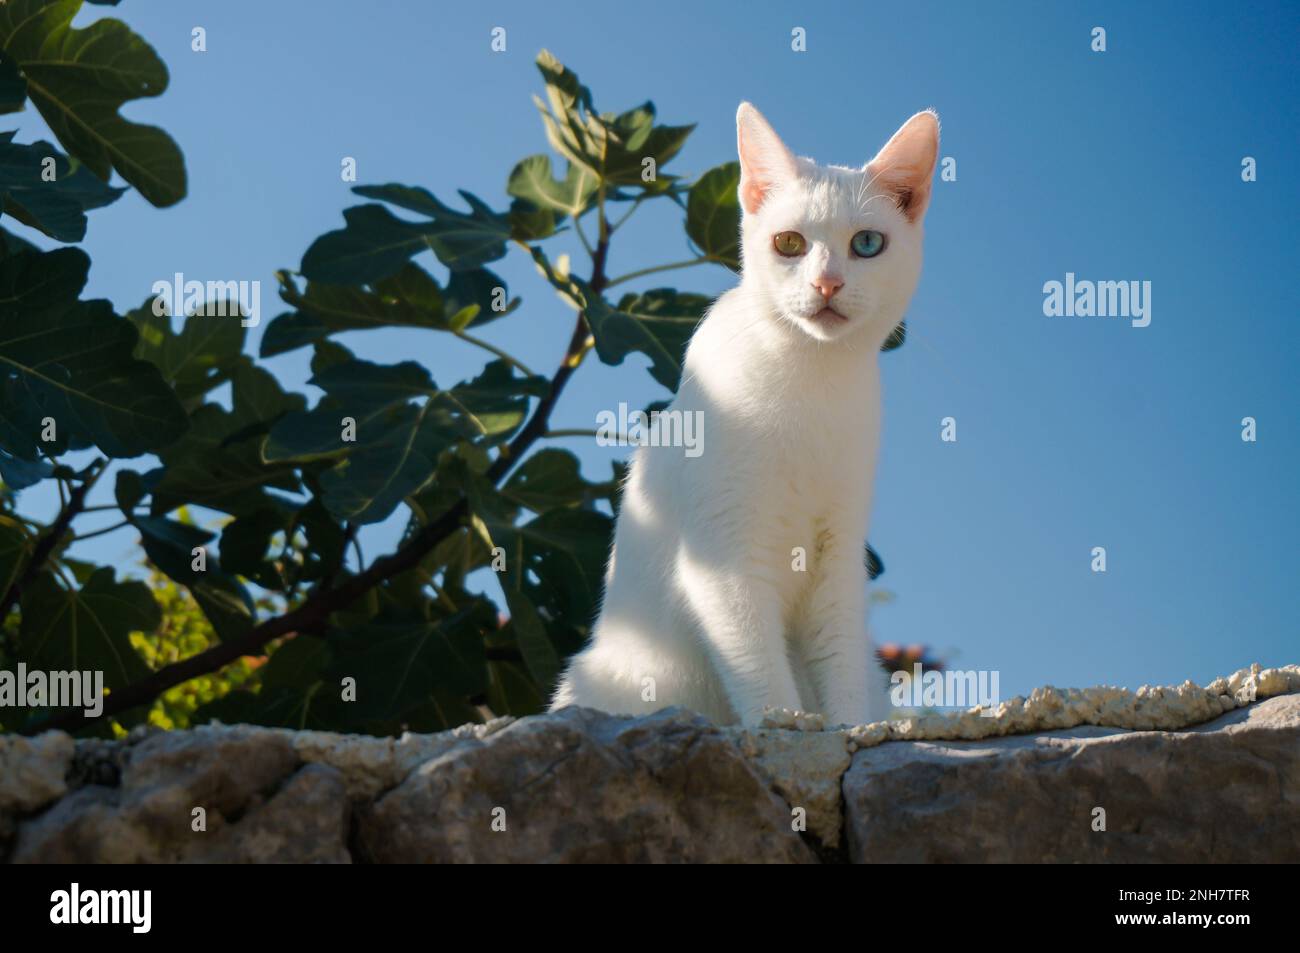 Weiße Katze mit einem grünen Auge und einem blauen Auge sitzt an einer Wand. Blauer Himmel und Blätter im Hintergrund. Katze mit ungewöhnlicher Augenfarbe. Stockfoto